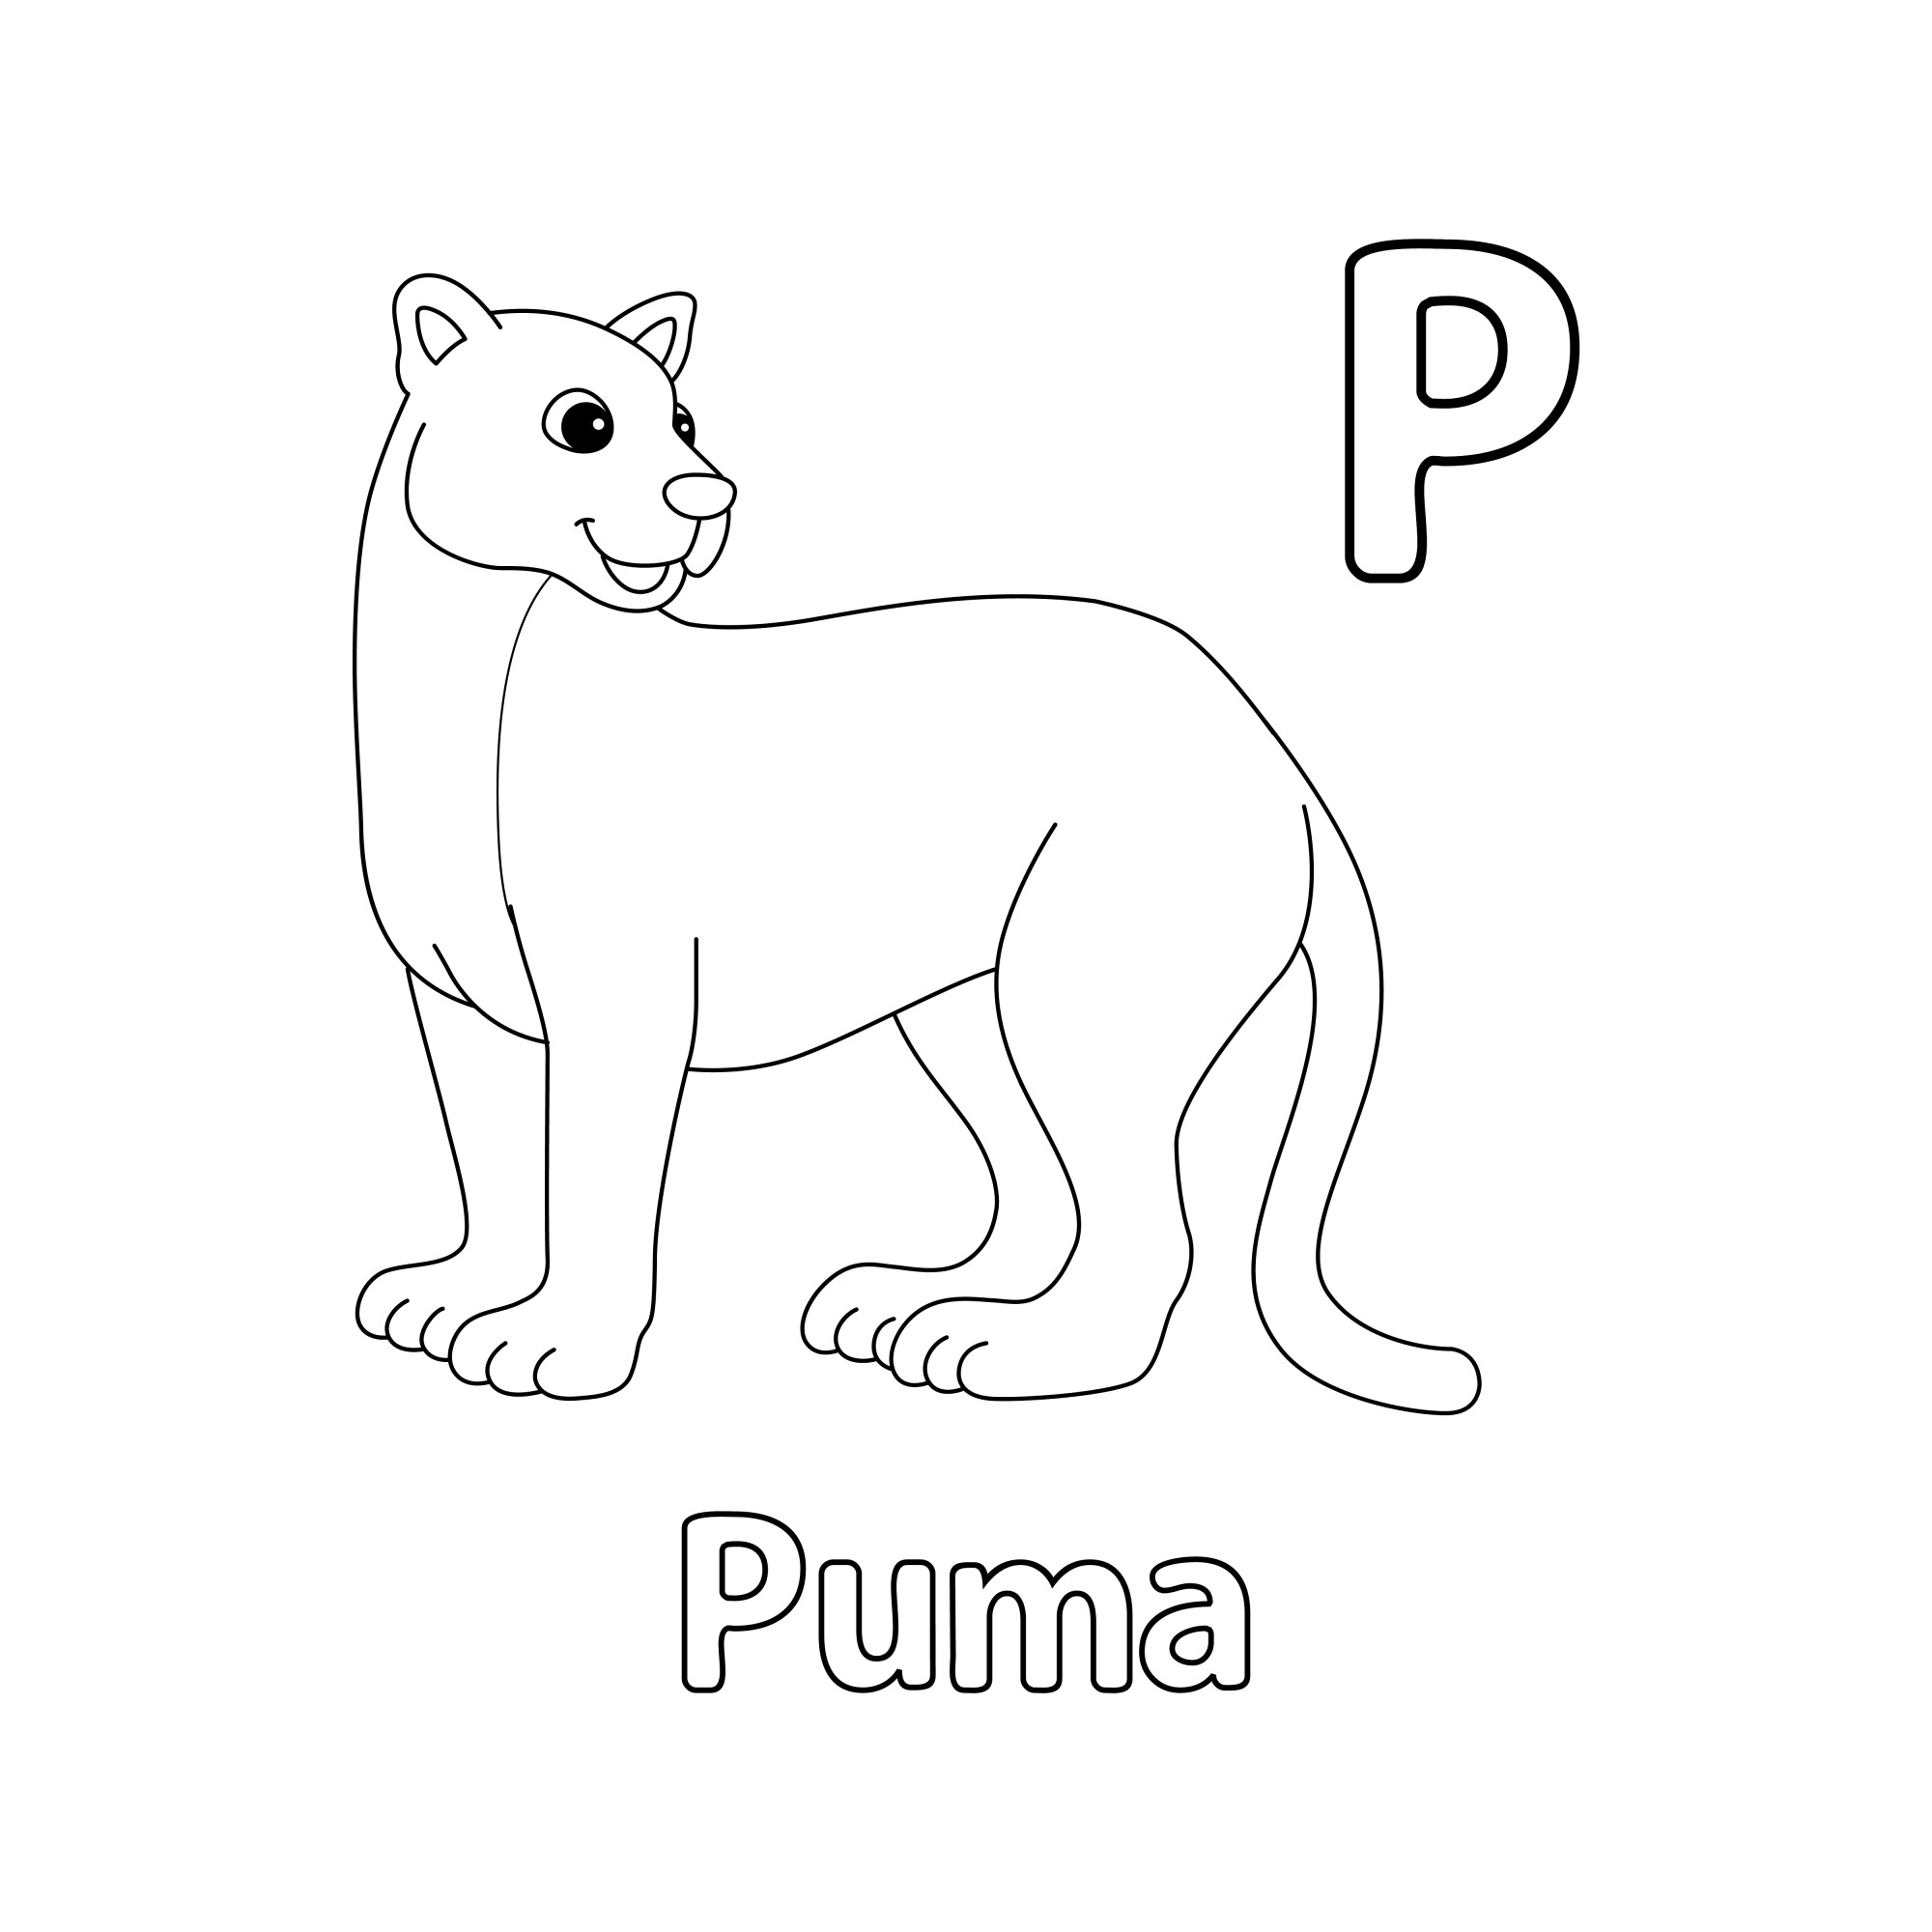 Раскраска для детей: буква P английского алфавита